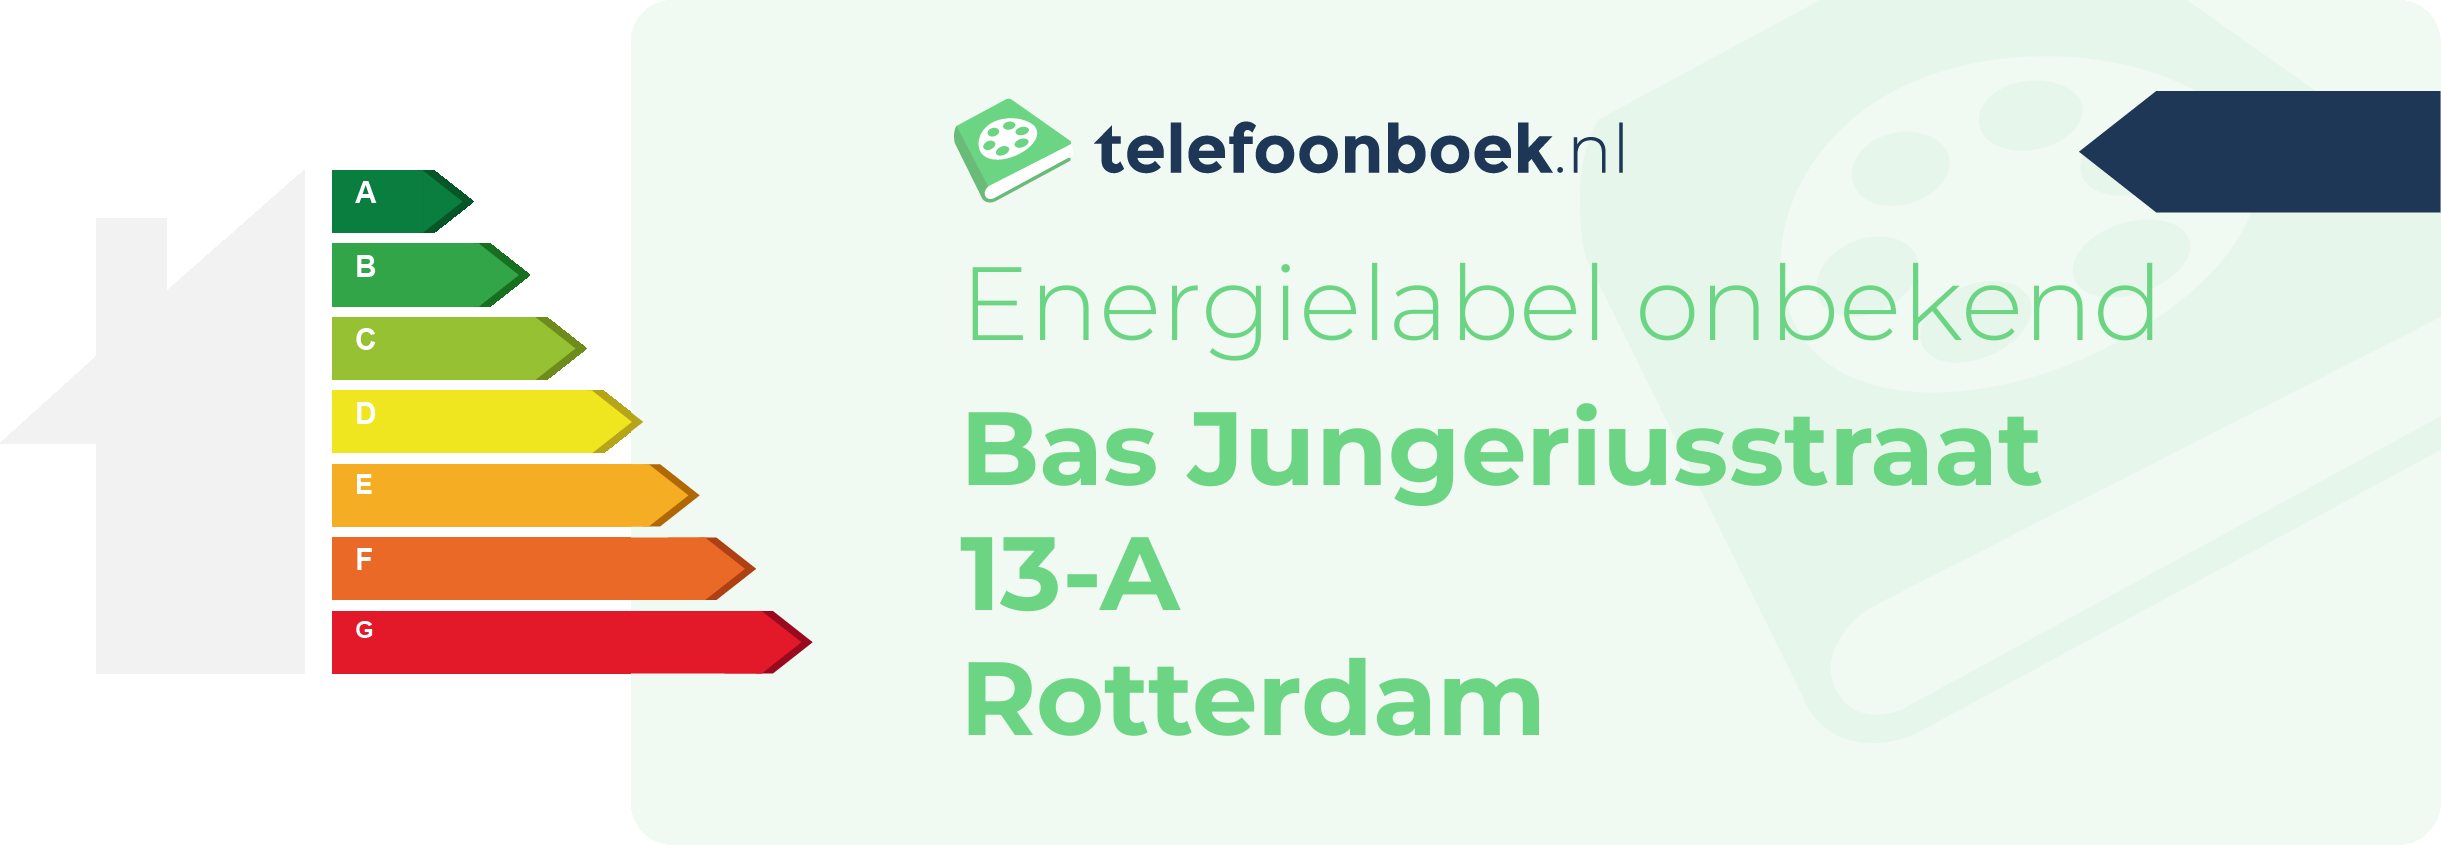 Energielabel Bas Jungeriusstraat 13-A Rotterdam